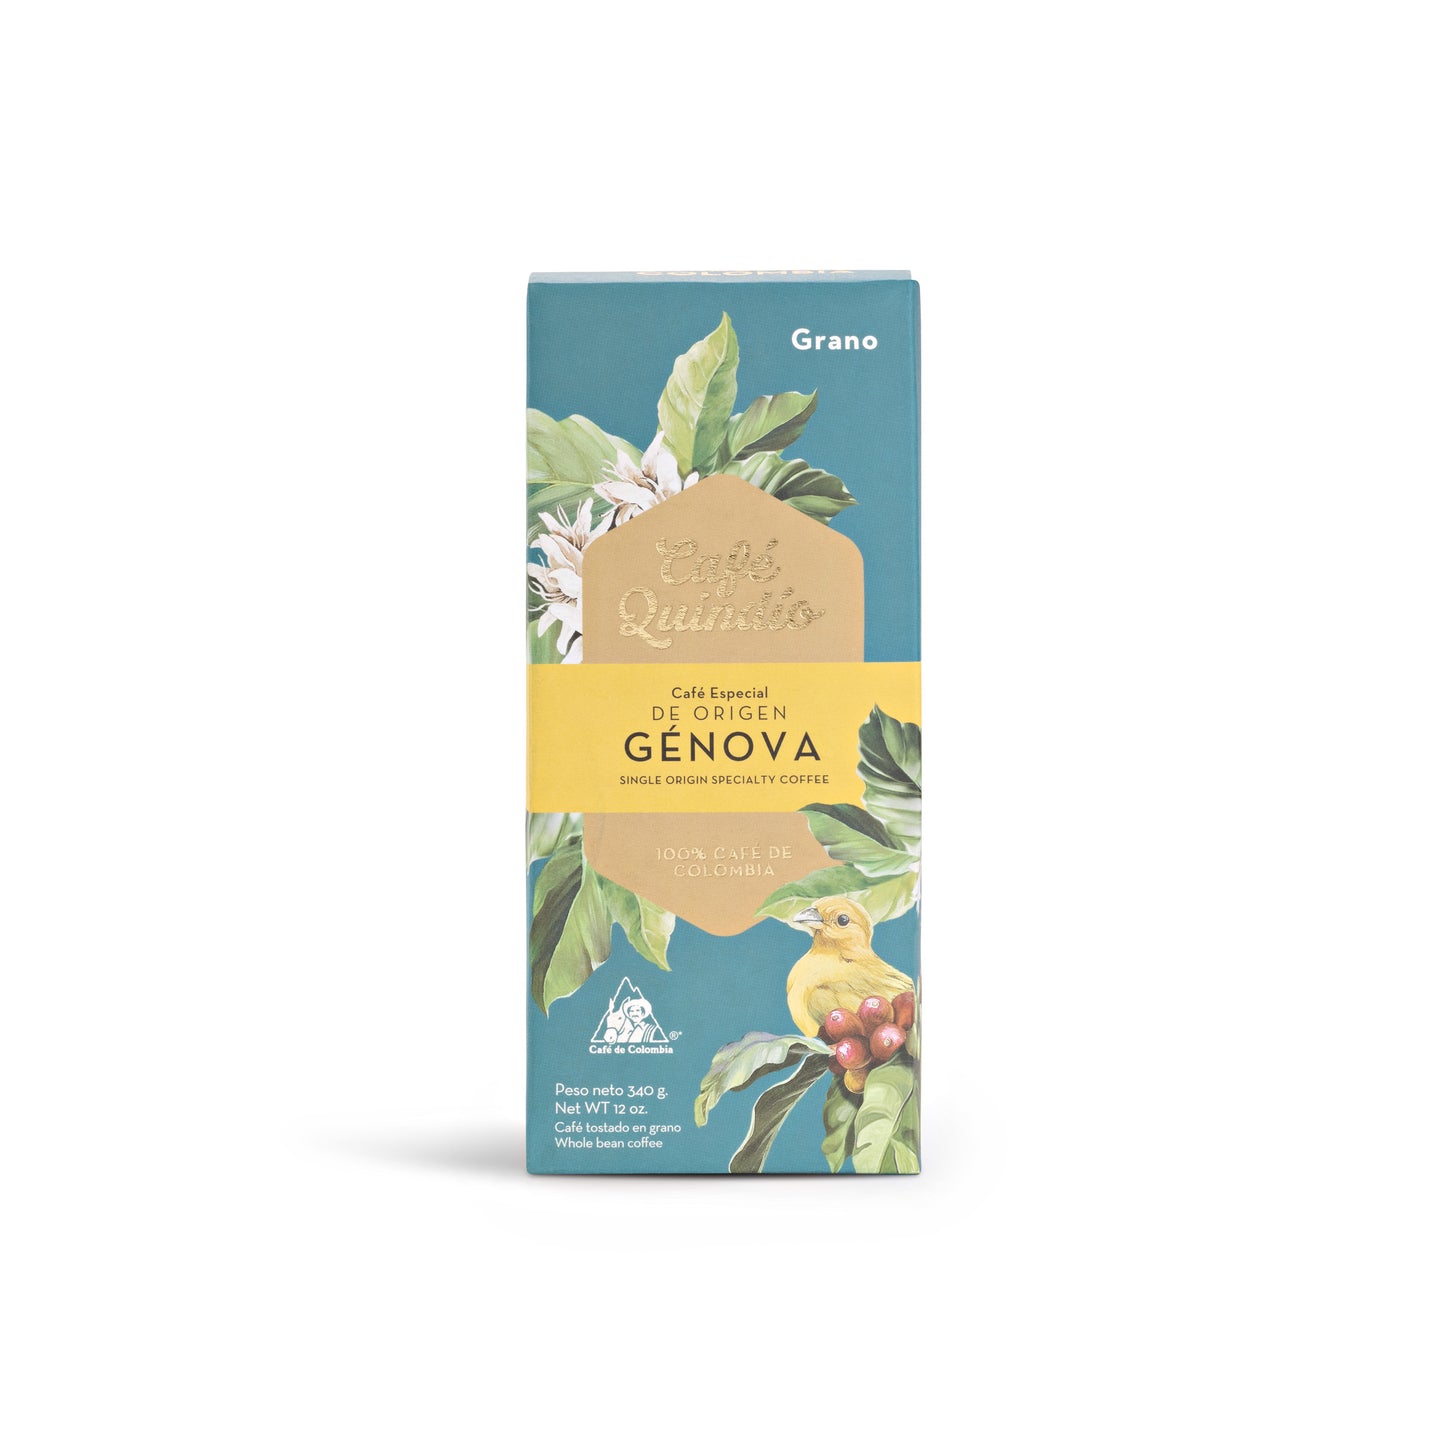 Cafe Quindío - Genova, Single Origin Specialty Coffee, Whole Bean 340 grams